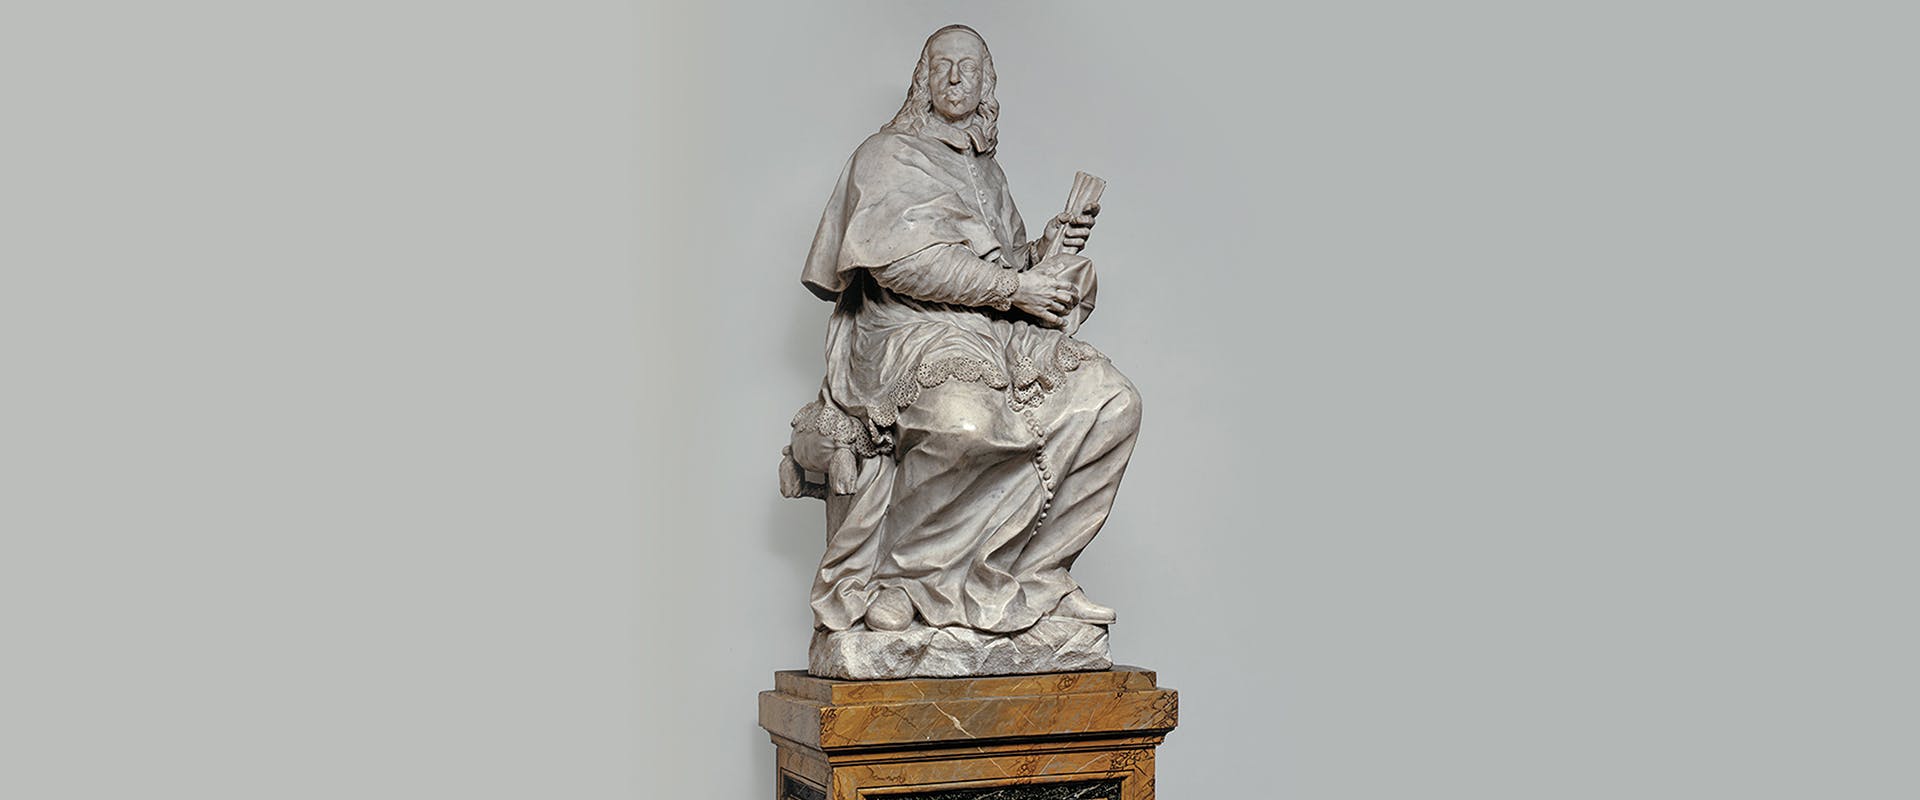 Leopoldo de’ Medici's systematic search for the “ritratto fatto di sua propria mano"